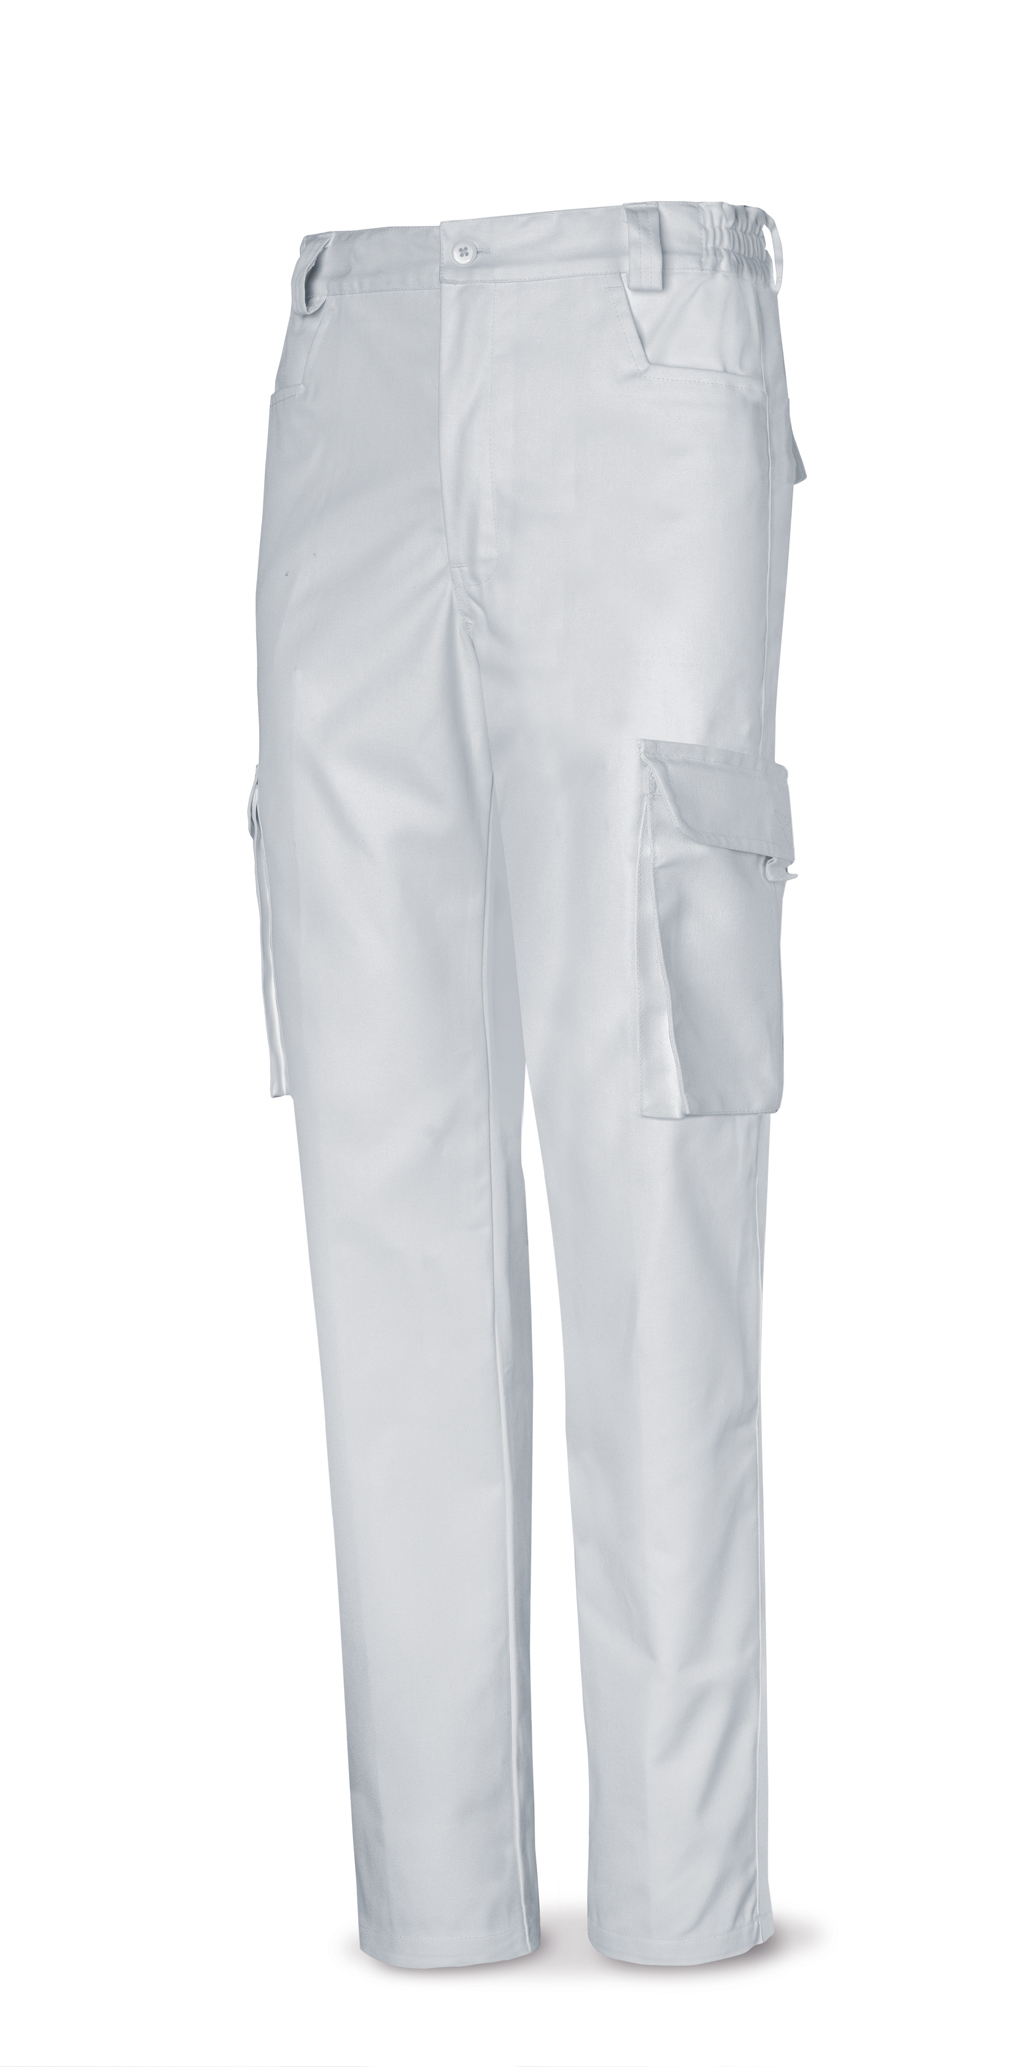 Pantalon tergal 1ª blanco 38